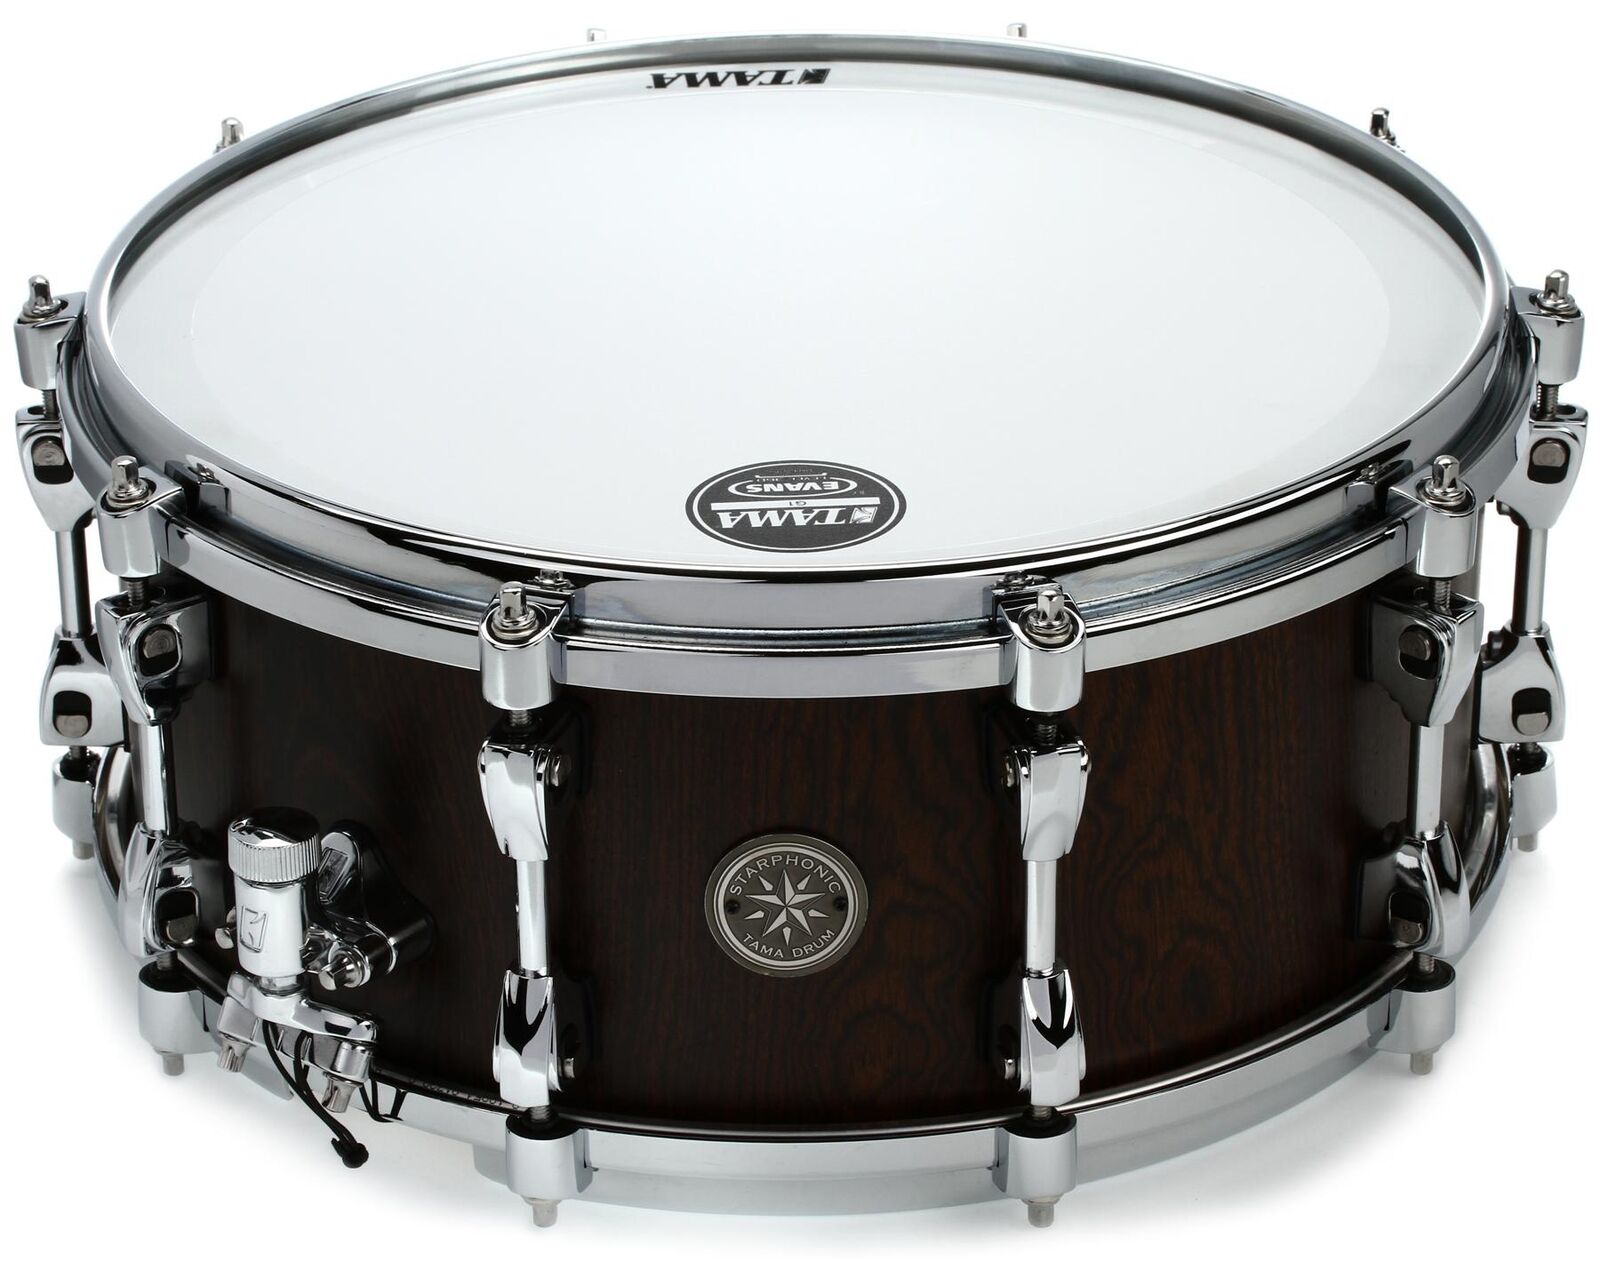 Tama Starphonic Series Snare Drum - 6" x 14" Bubinga